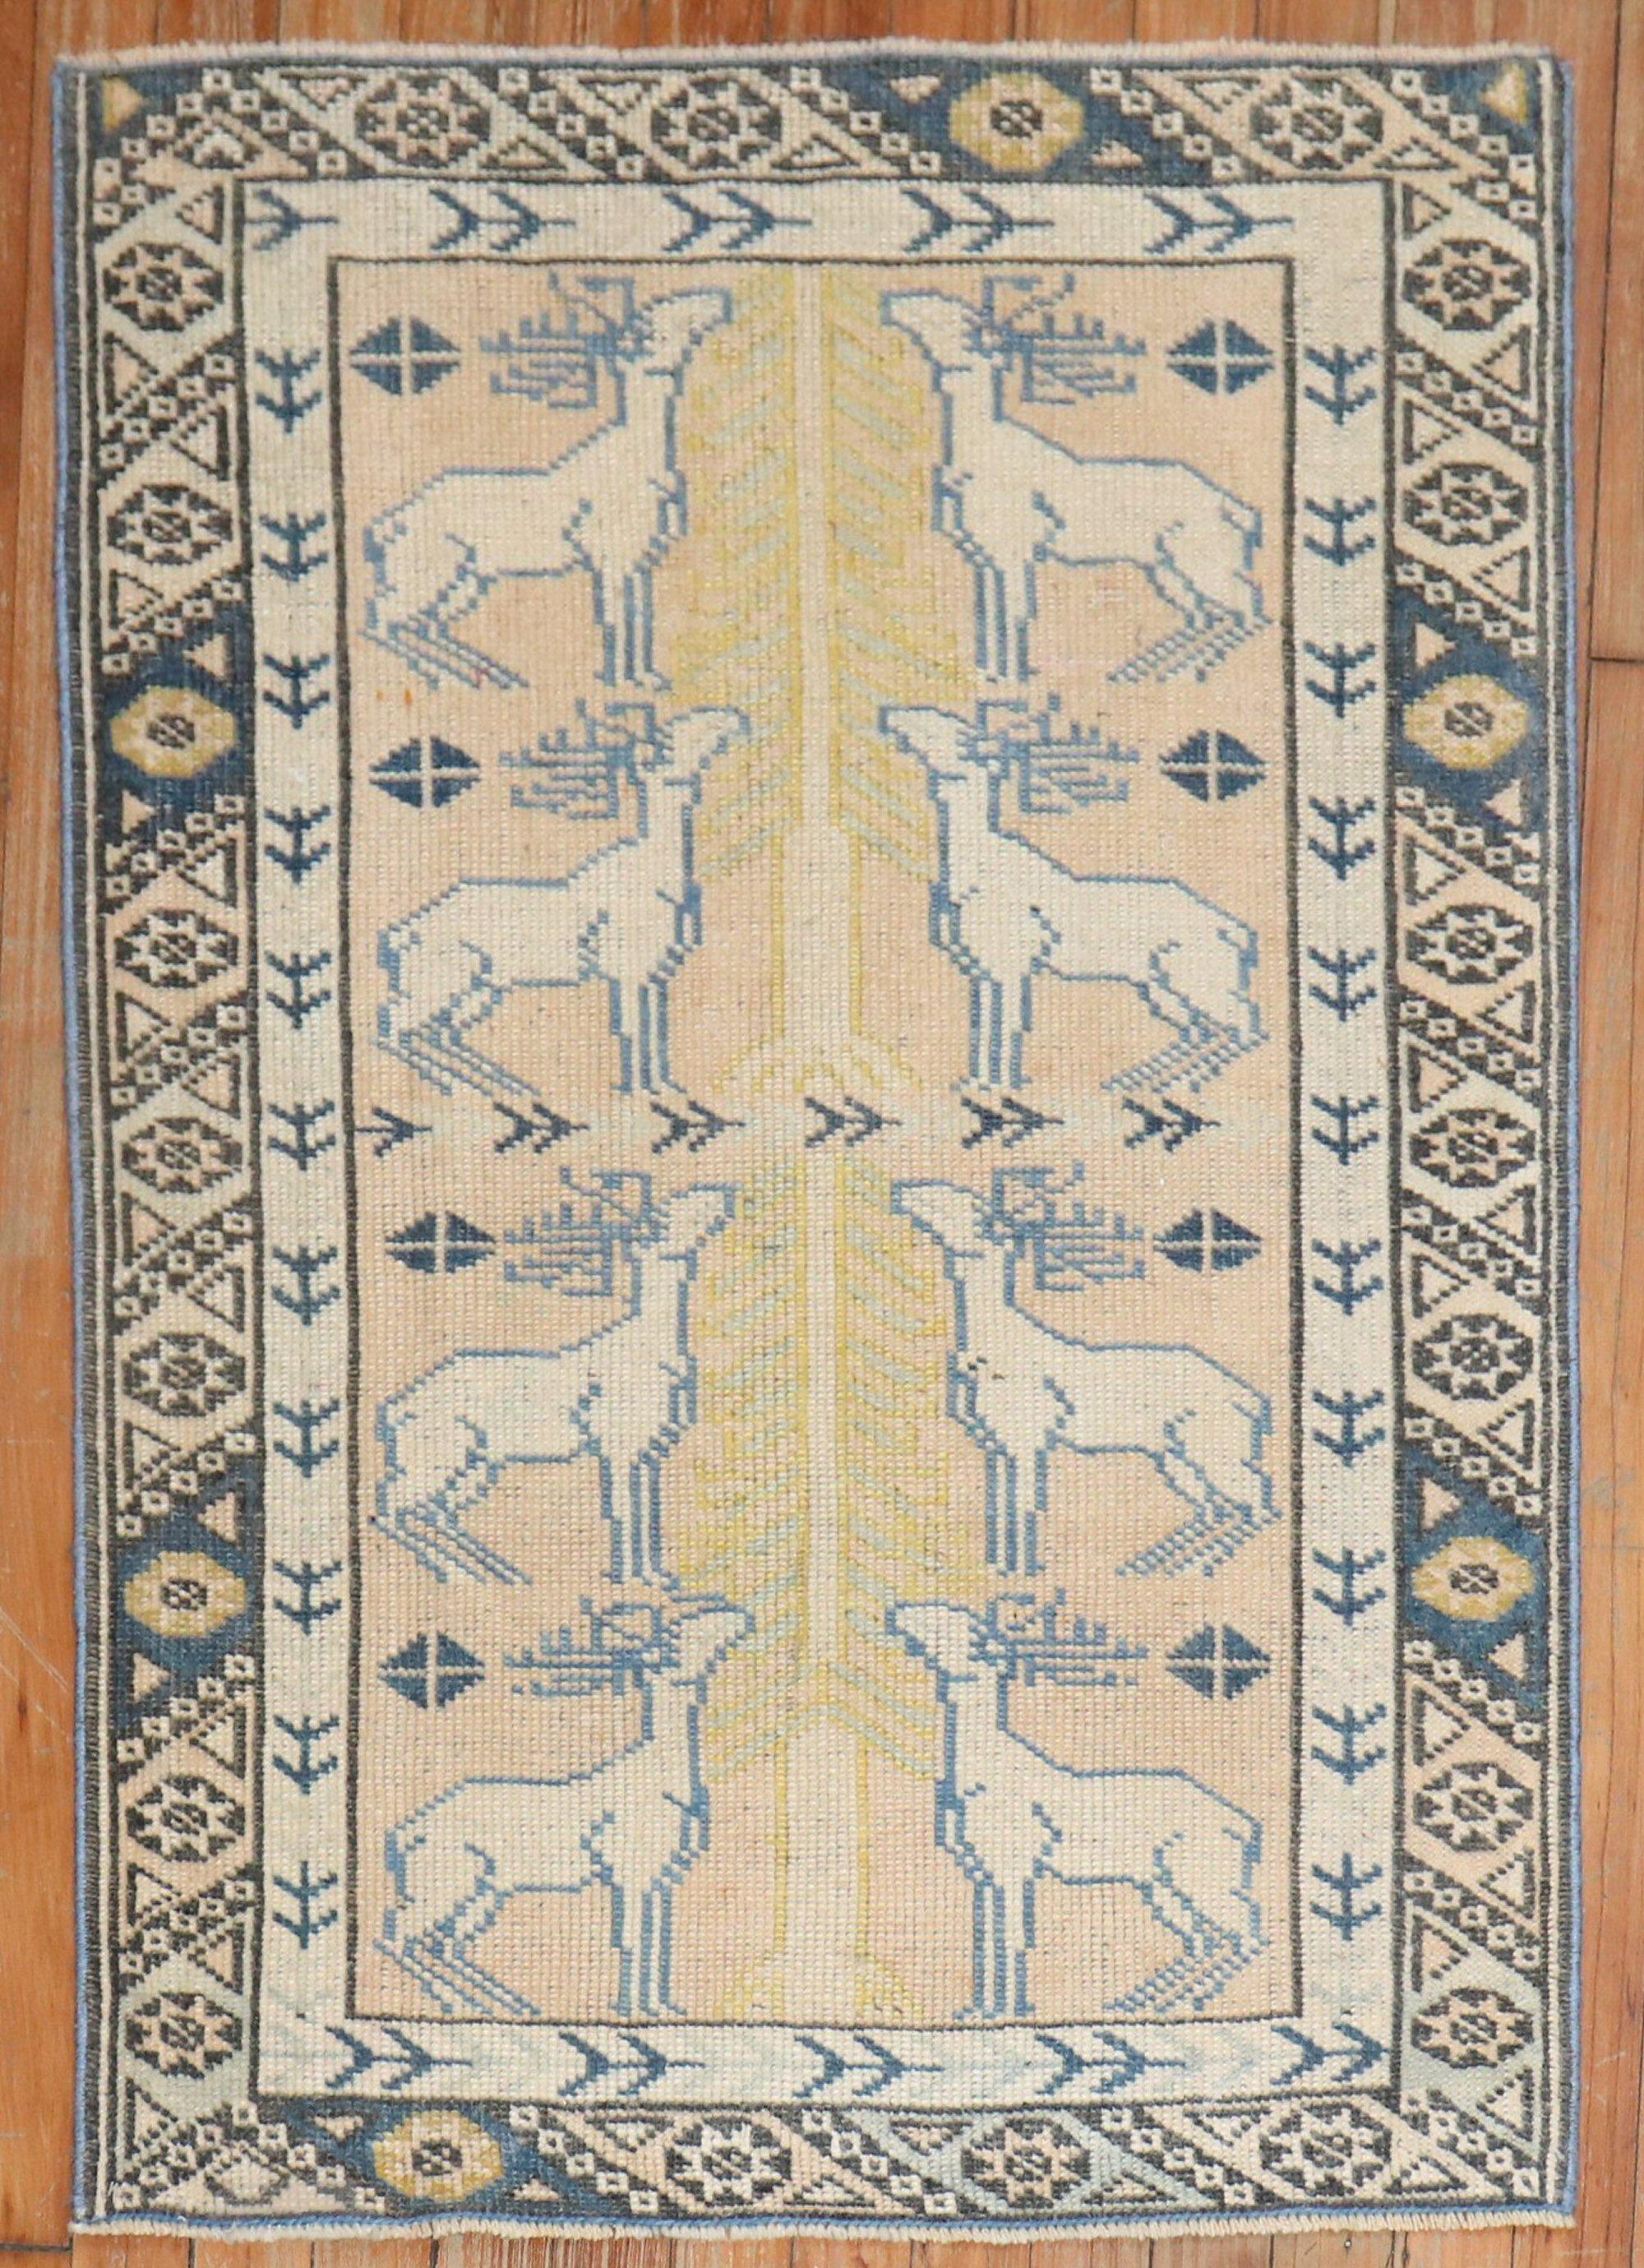 Türkischer anatolischer Bildteppich aus dem späten 20. Jahrhundert mit 8 lustigen, vollen Rentieren.

Maße: 2'5'' x 3'7''.